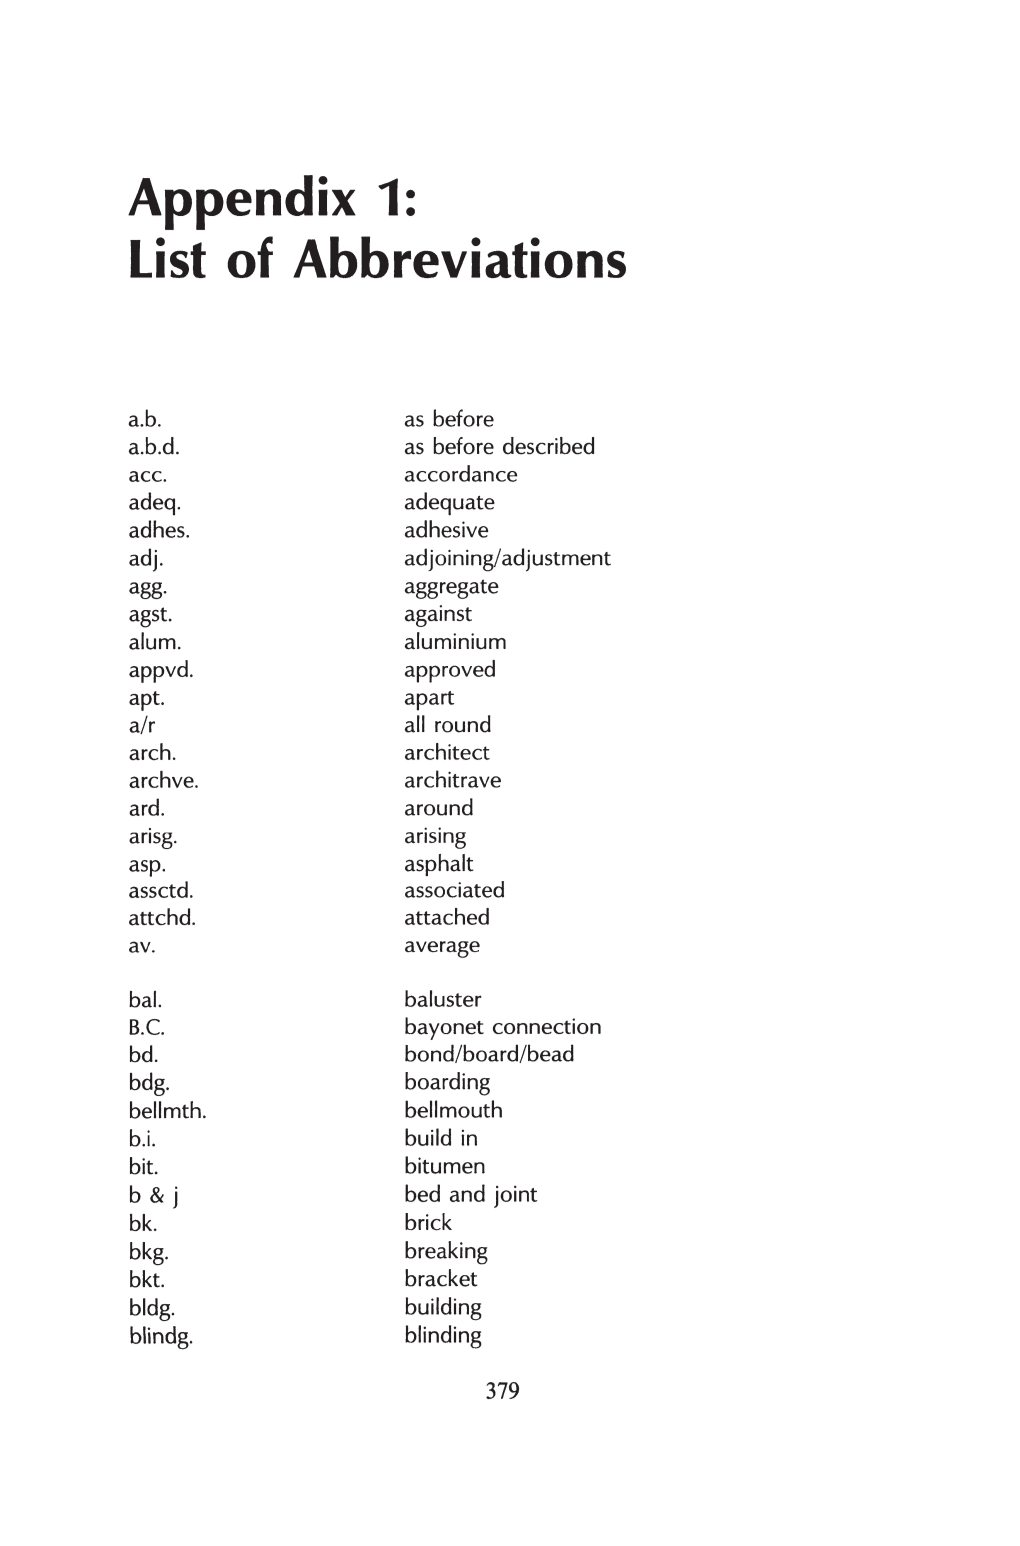 Appendix 1: List of Abbreviations